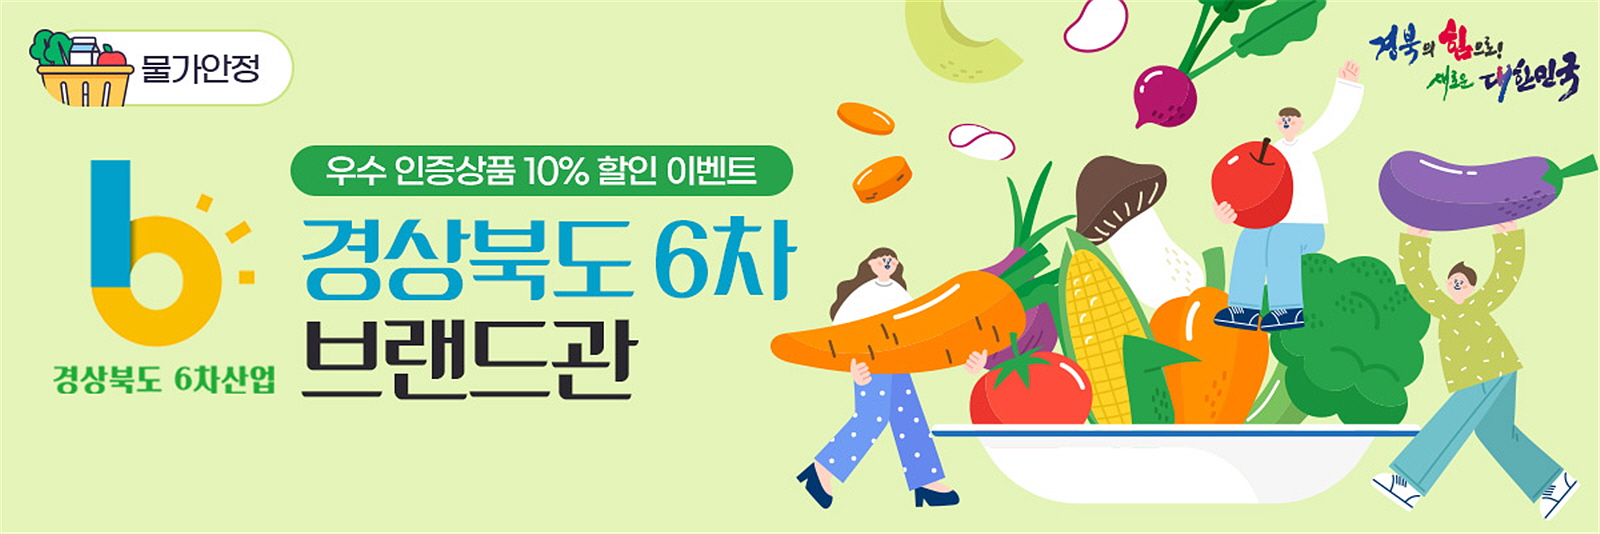 경북도,우체국쇼핑몰과 손잡고 물가안정 특별판매전 개최